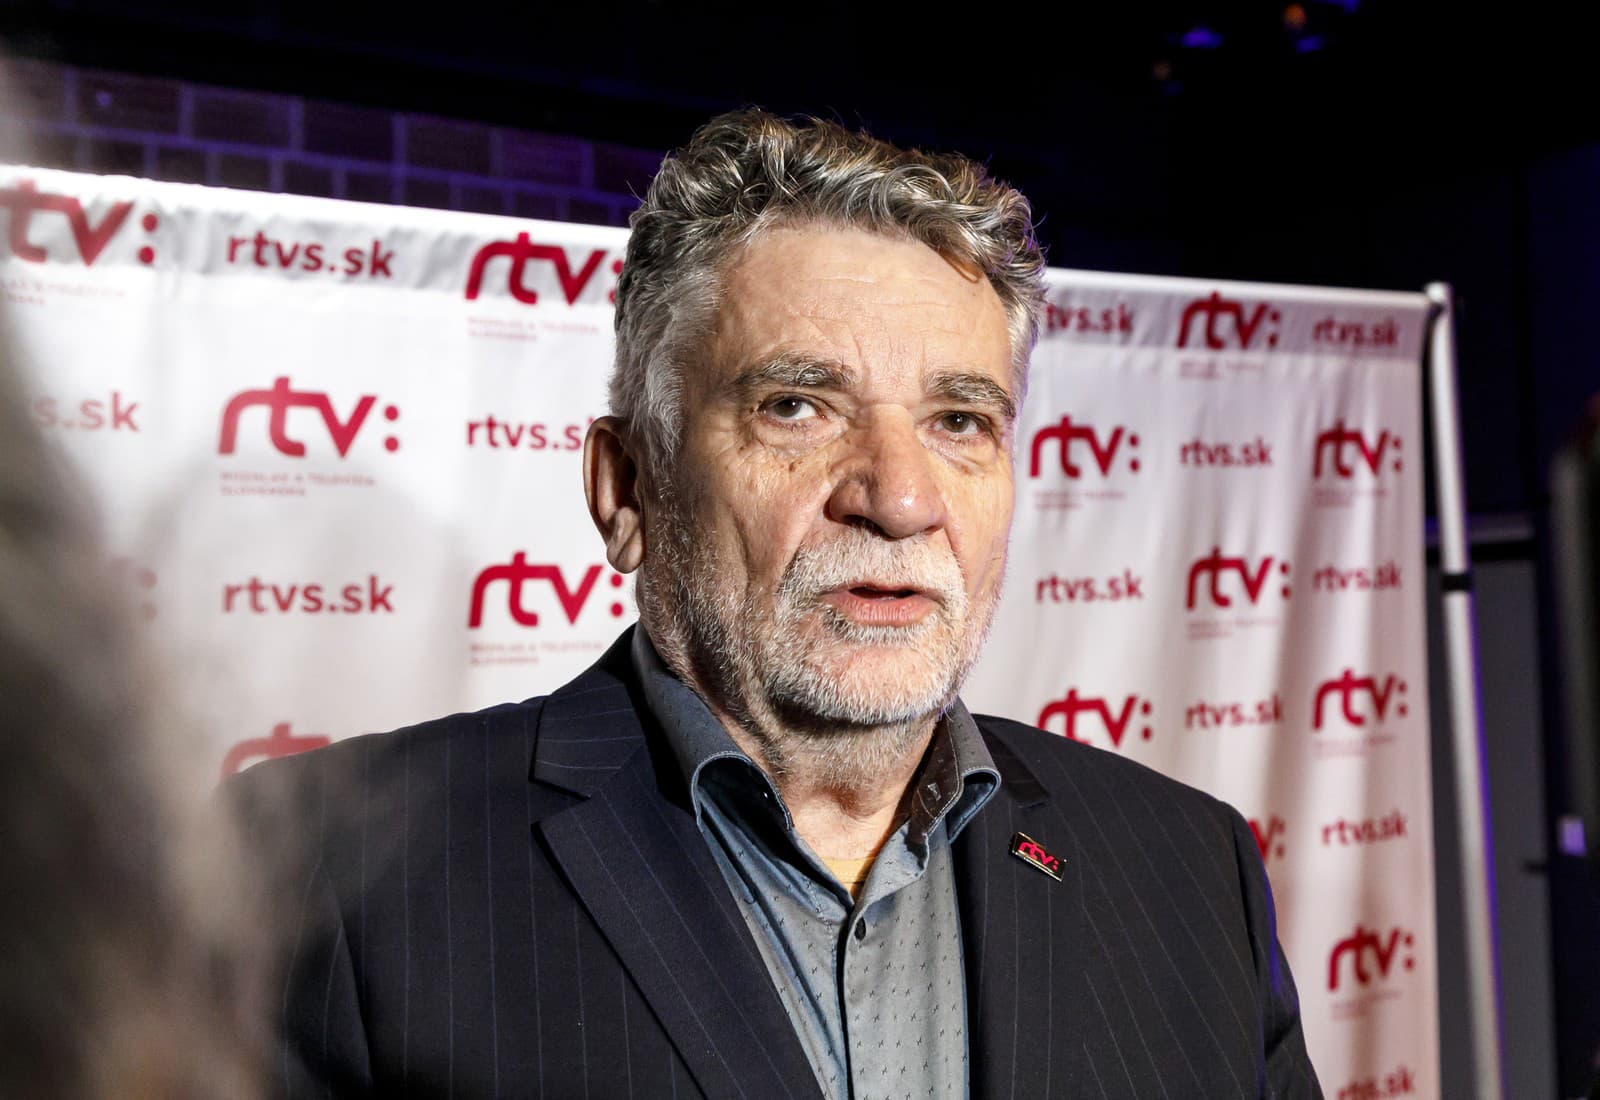 Súčasný generálny riaditeľ RTVS Ľuboš Machaj